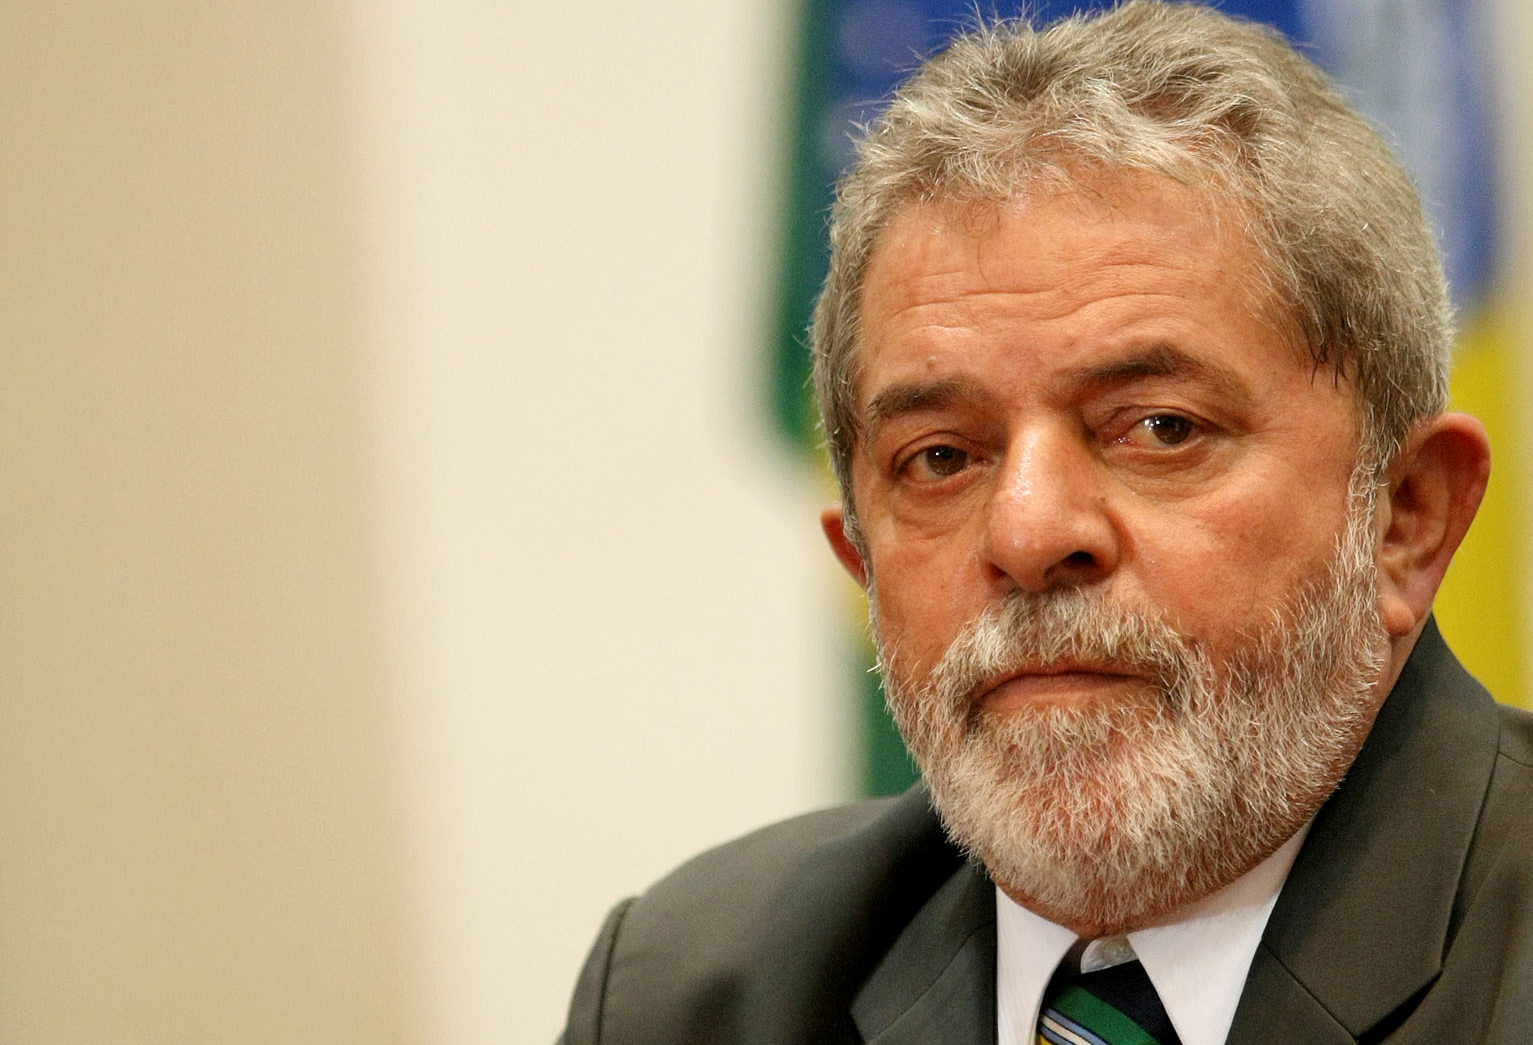 Michel Temer, ante la posible detención de Lula da Silva: "Sería un problema para el país"